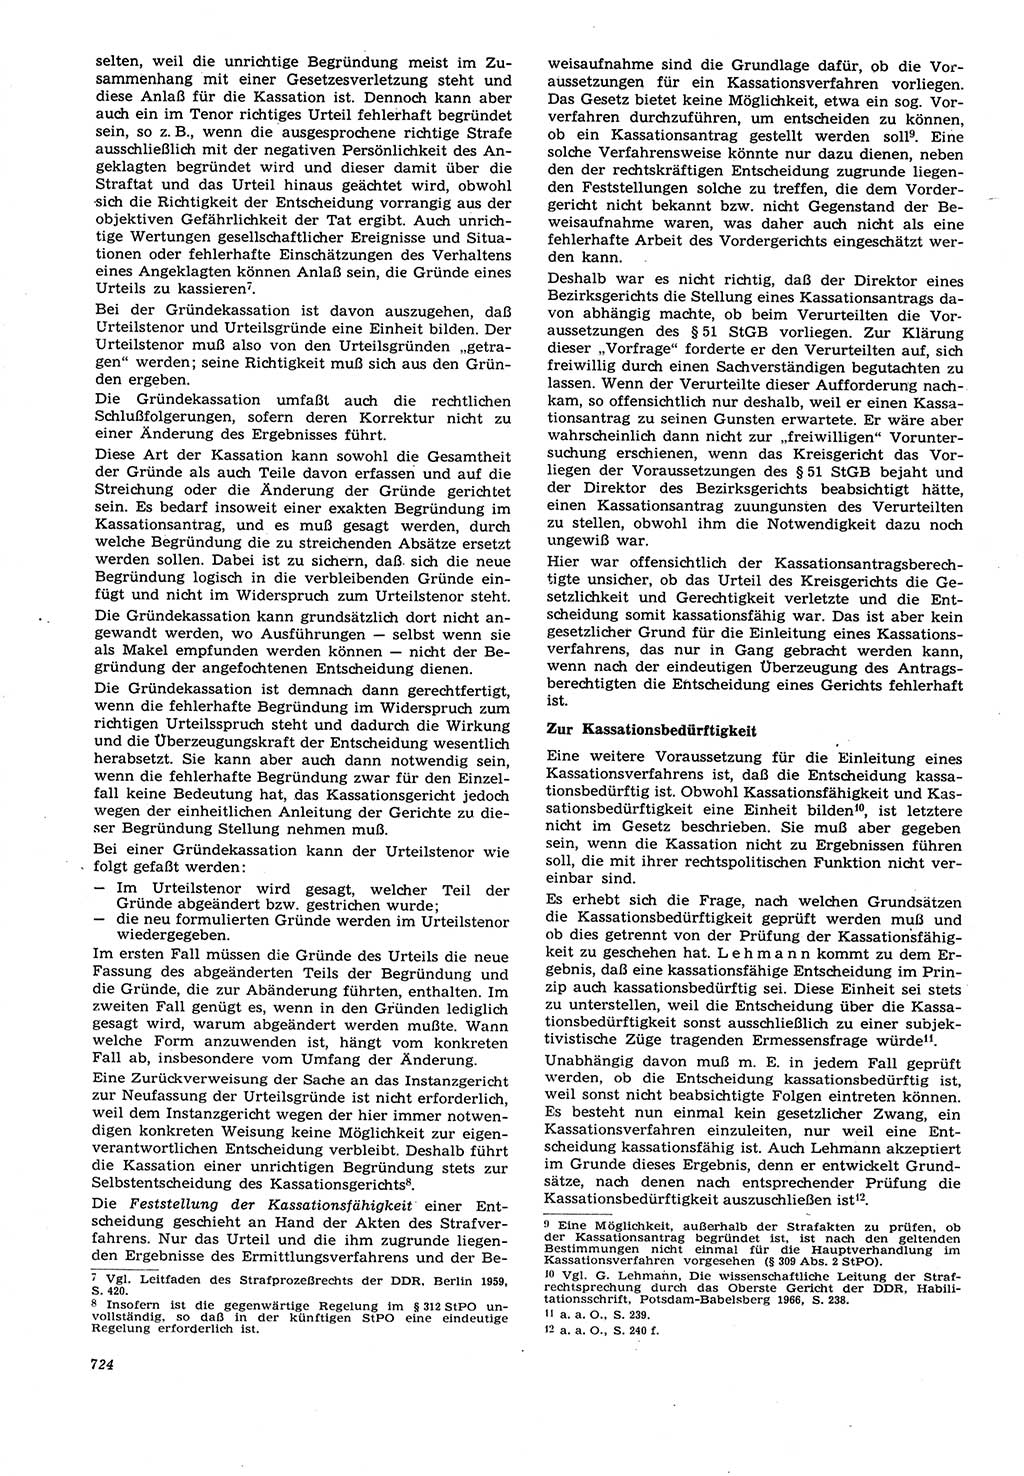 Neue Justiz (NJ), Zeitschrift für Recht und Rechtswissenschaft [Deutsche Demokratische Republik (DDR)], 21. Jahrgang 1967, Seite 724 (NJ DDR 1967, S. 724)